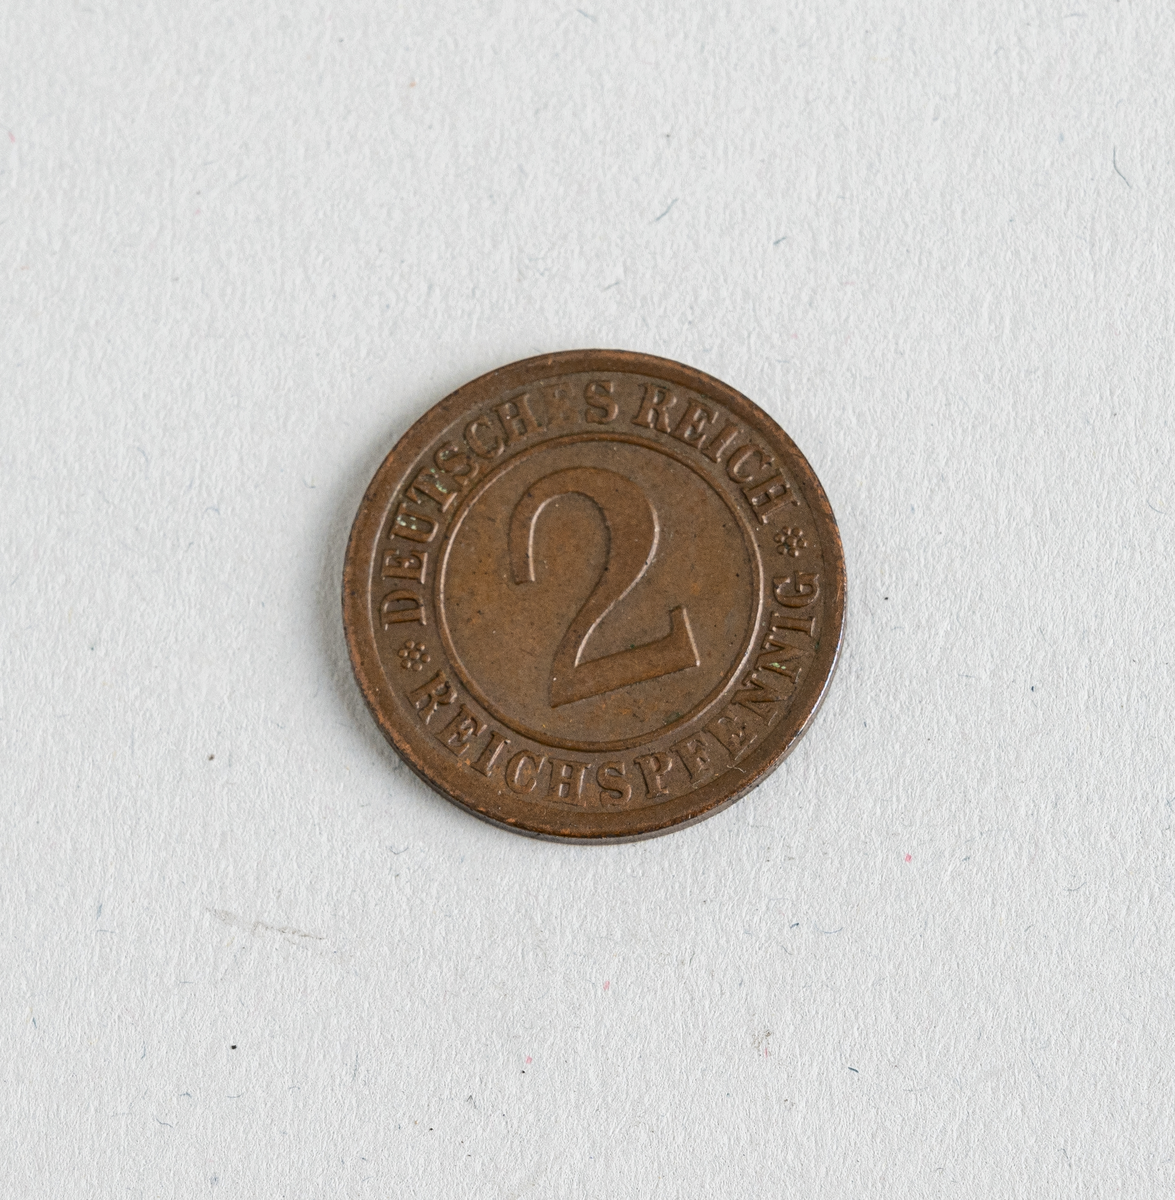 En tysk 2-reichspfennig fra 1924. Mynten er laget av bronse. På den ene siden er det informasjon om valør og utsteder. På den andre siden er et nek av hvete med årstallet 1924. Denne mynten var en standard sirkulasjonsmynt i perioden 1923-1936.